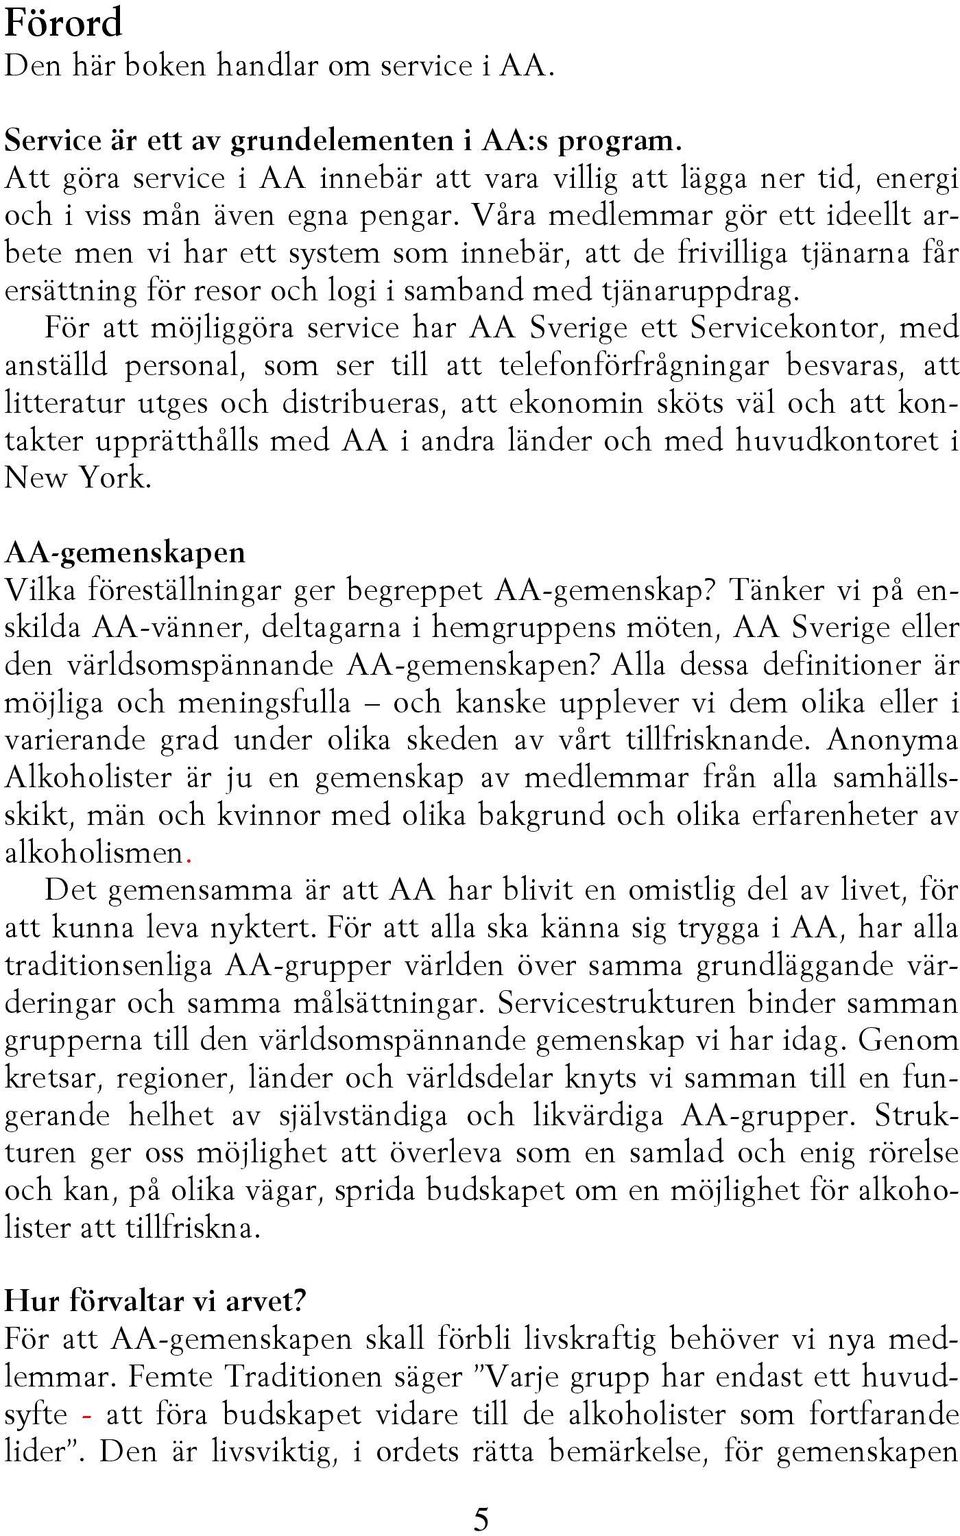 För att möjliggöra service har AA Sverige ett Servicekontor, med anställd personal, som ser till att telefonförfrågningar besvaras, att litteratur utges och distribueras, att ekonomin sköts väl och